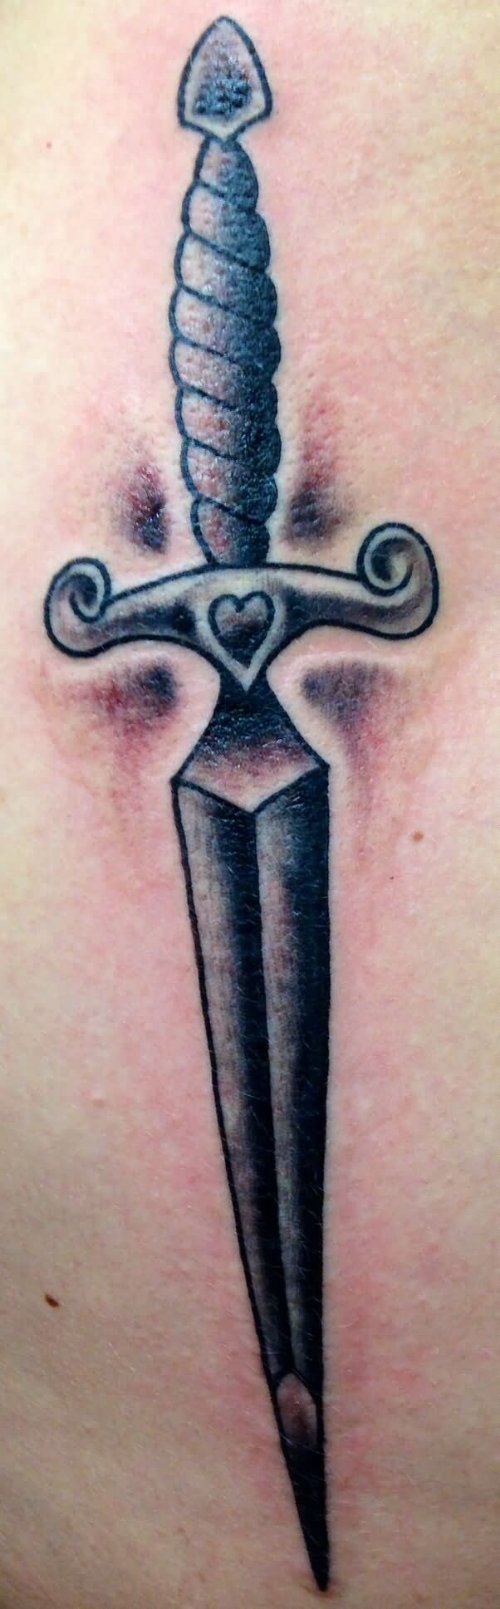 Black Ink Dagger Tattoo